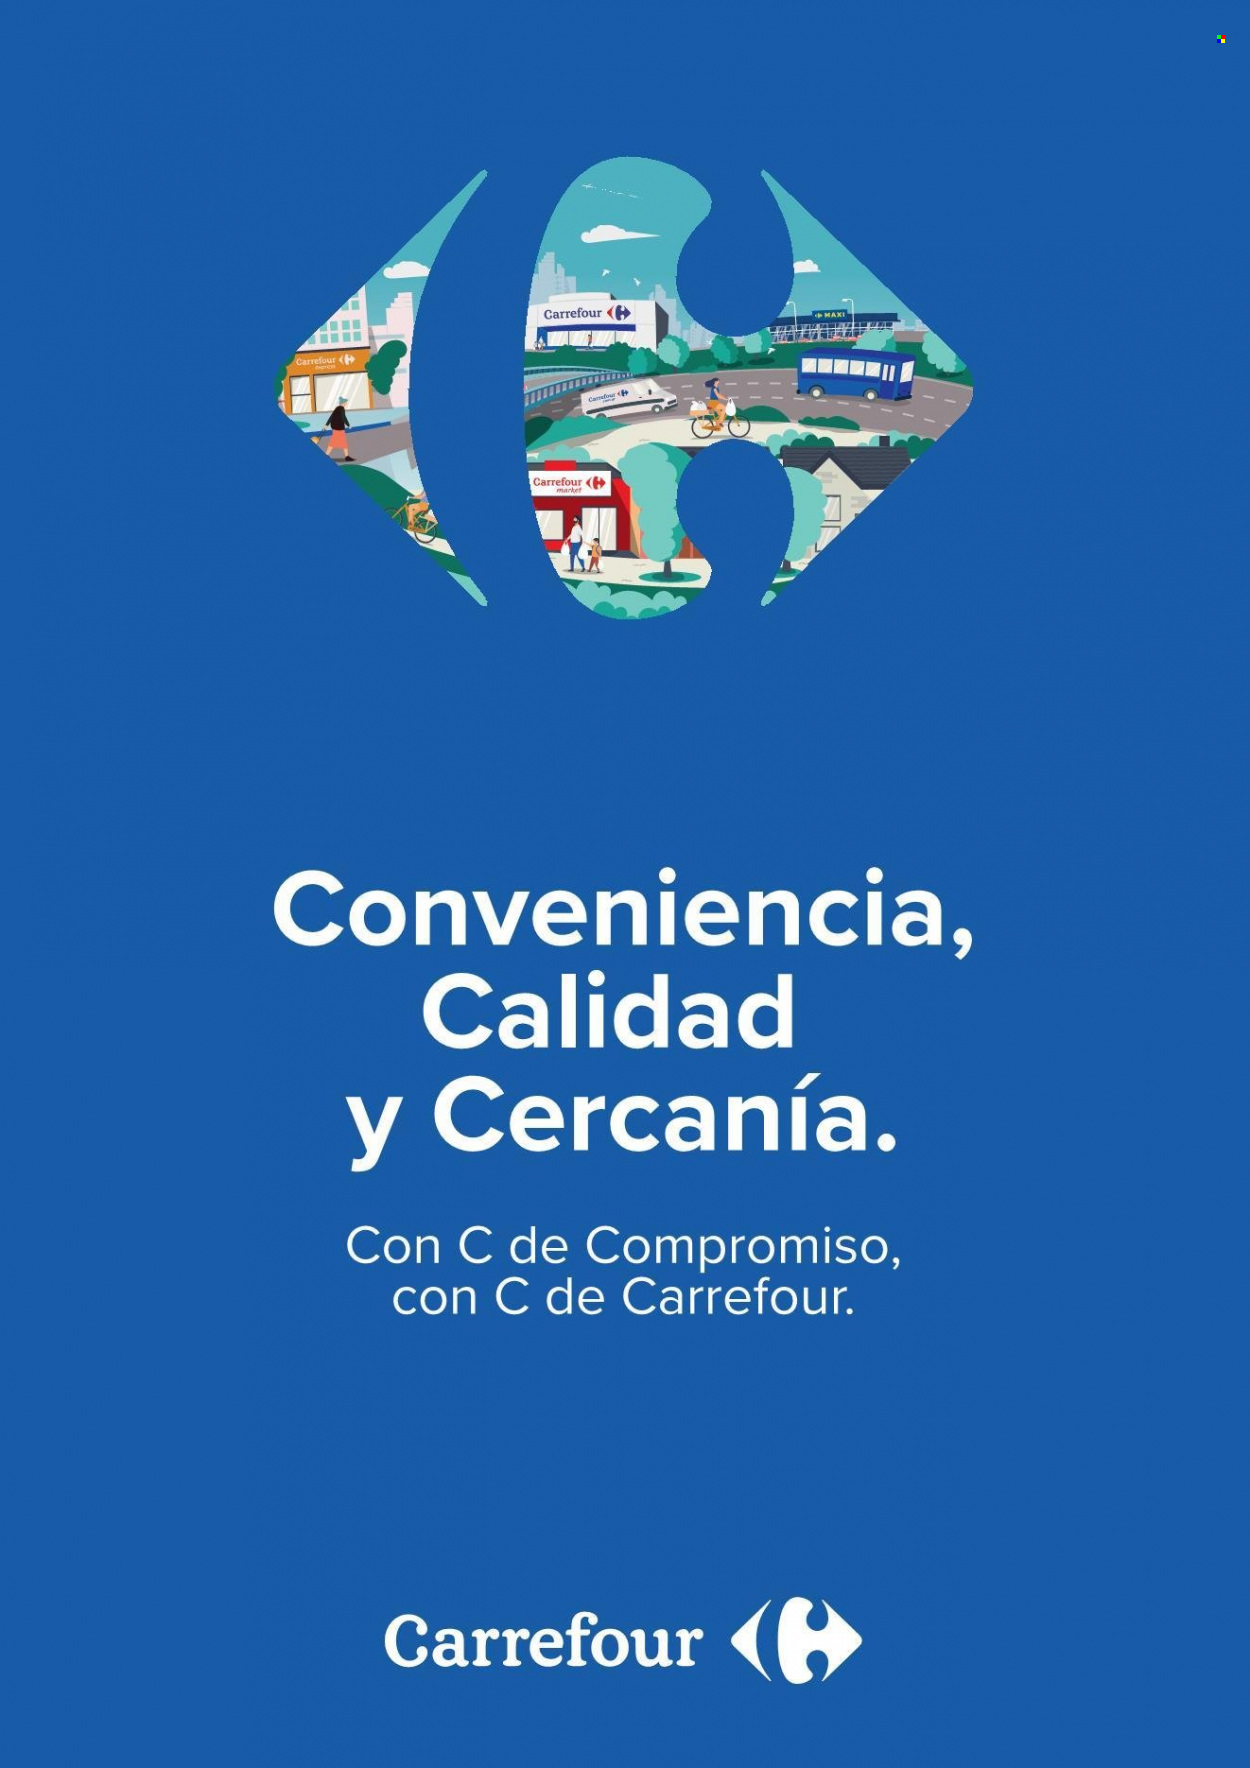 Catálogo Carrefour Hipermercados  - 18.1.2022 - 24.1.2022.